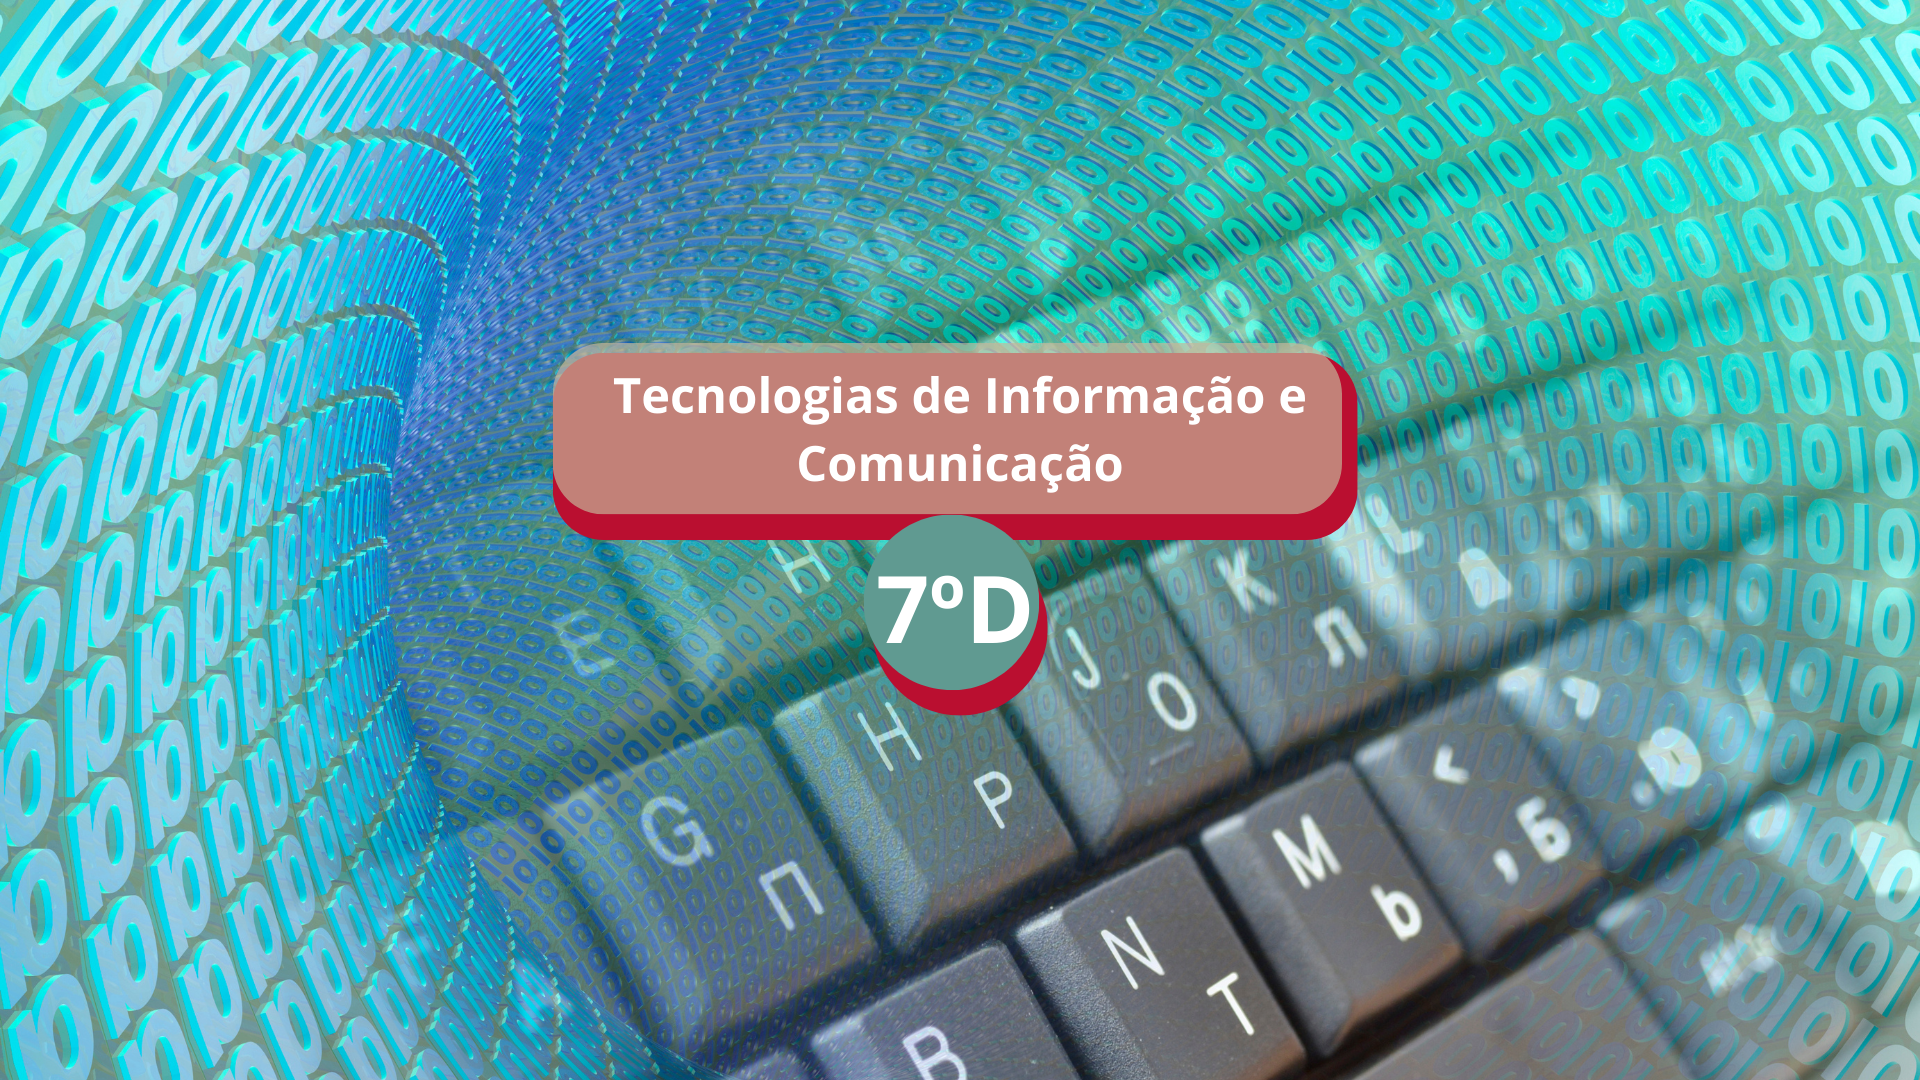 7D - Tecnologias de Informação e Comunicação